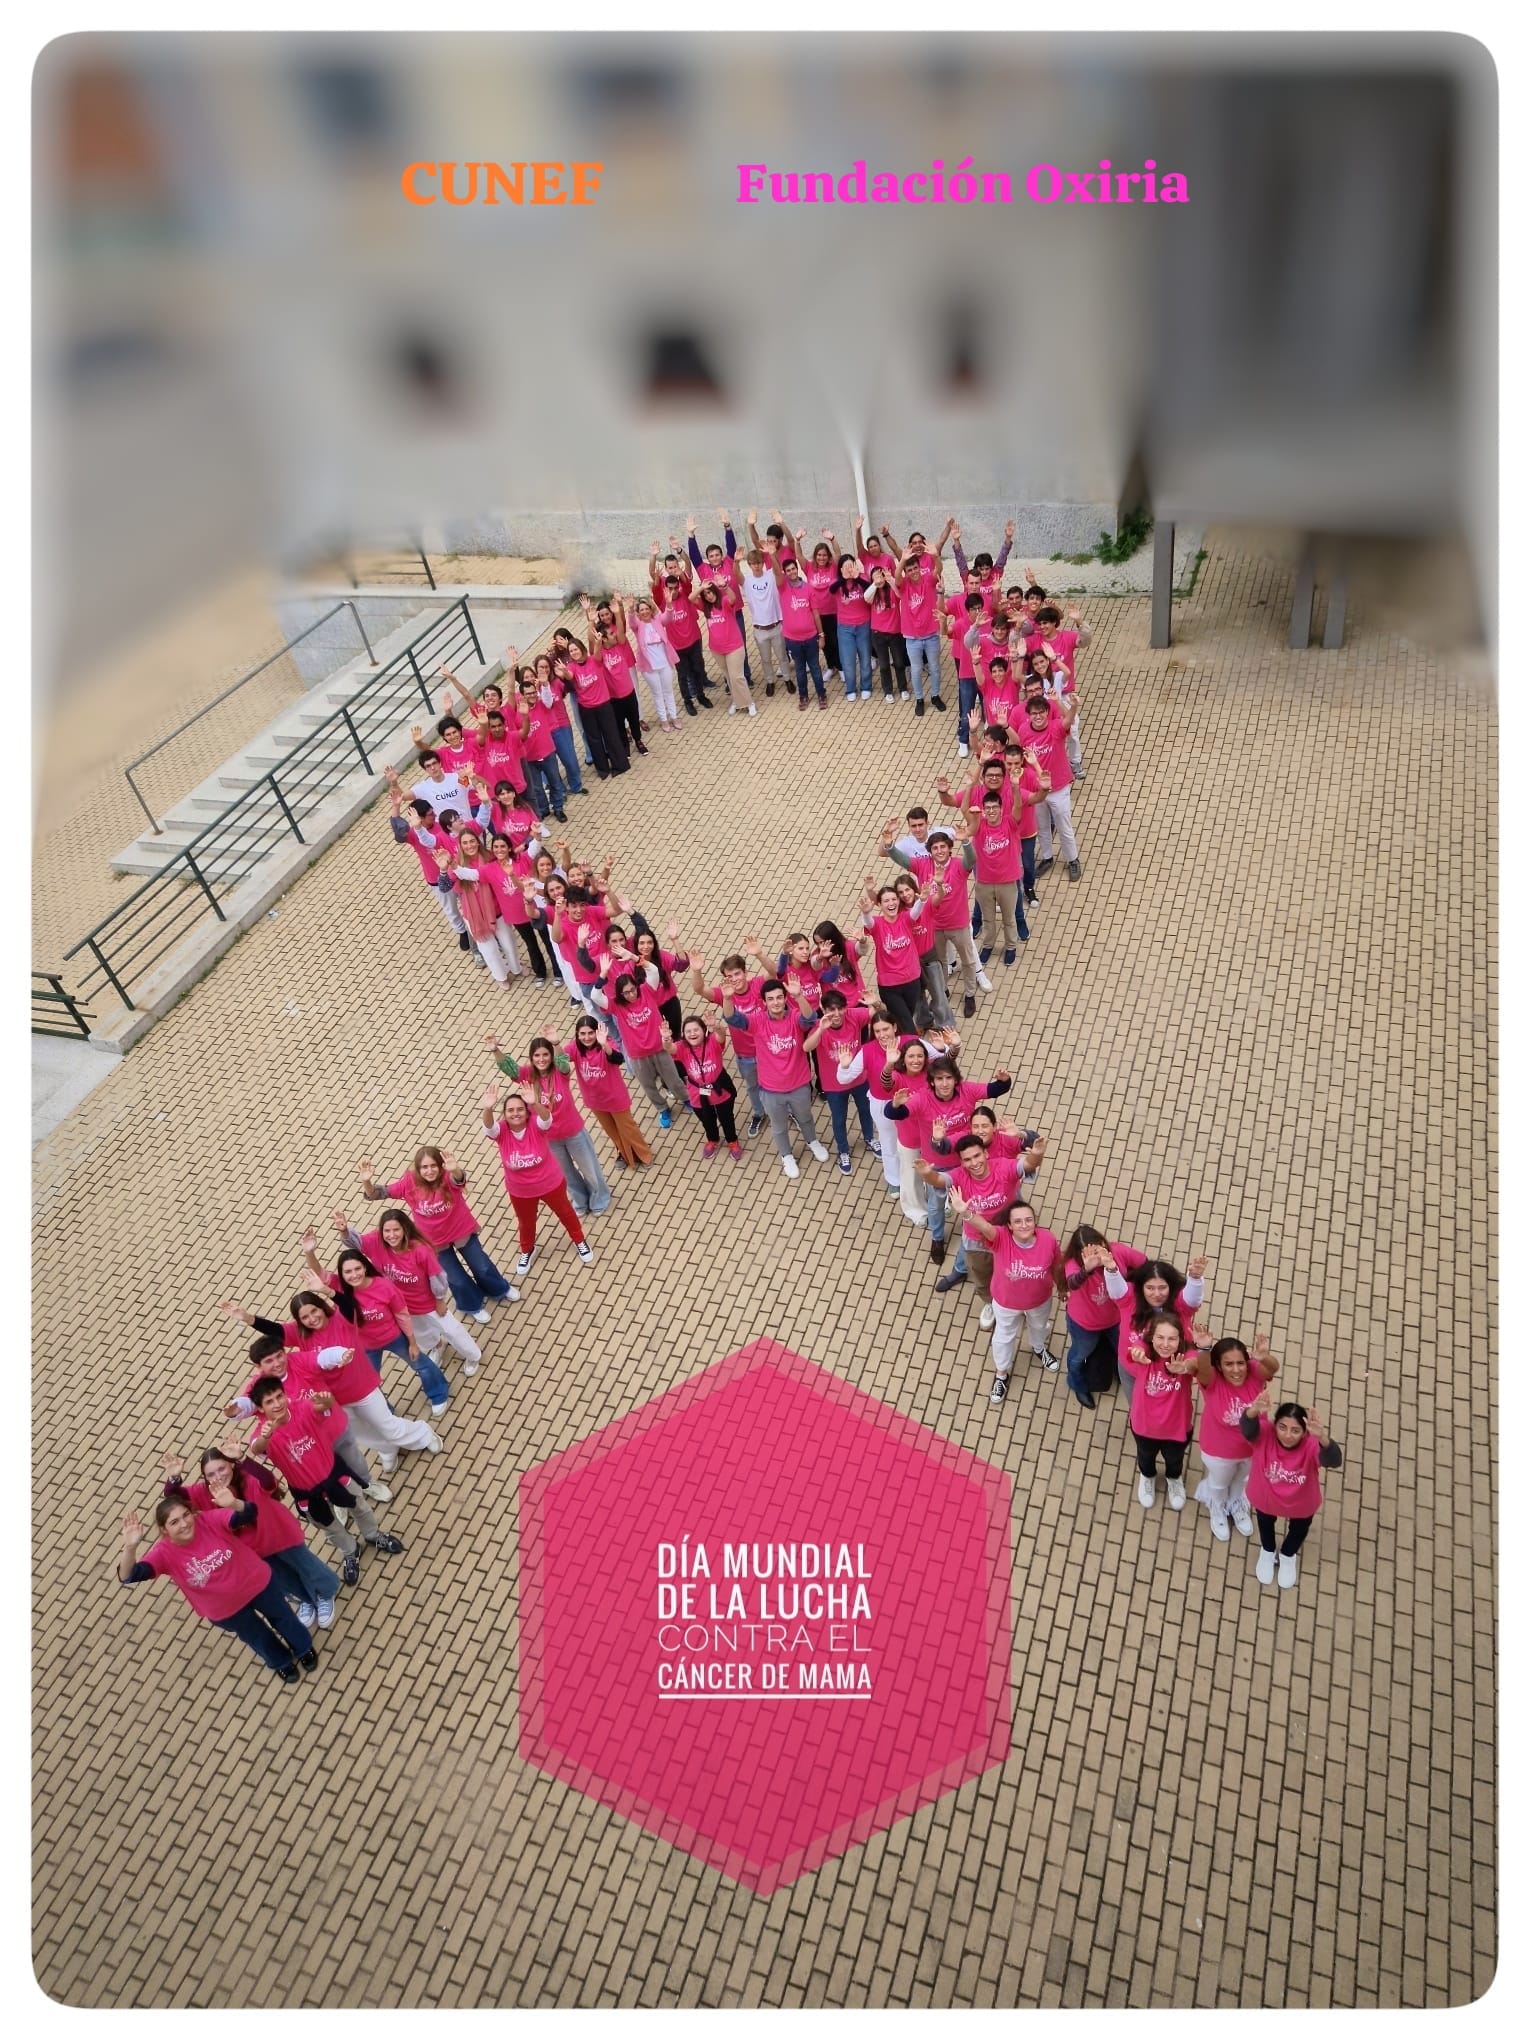 lucha contra el cancer de mama.